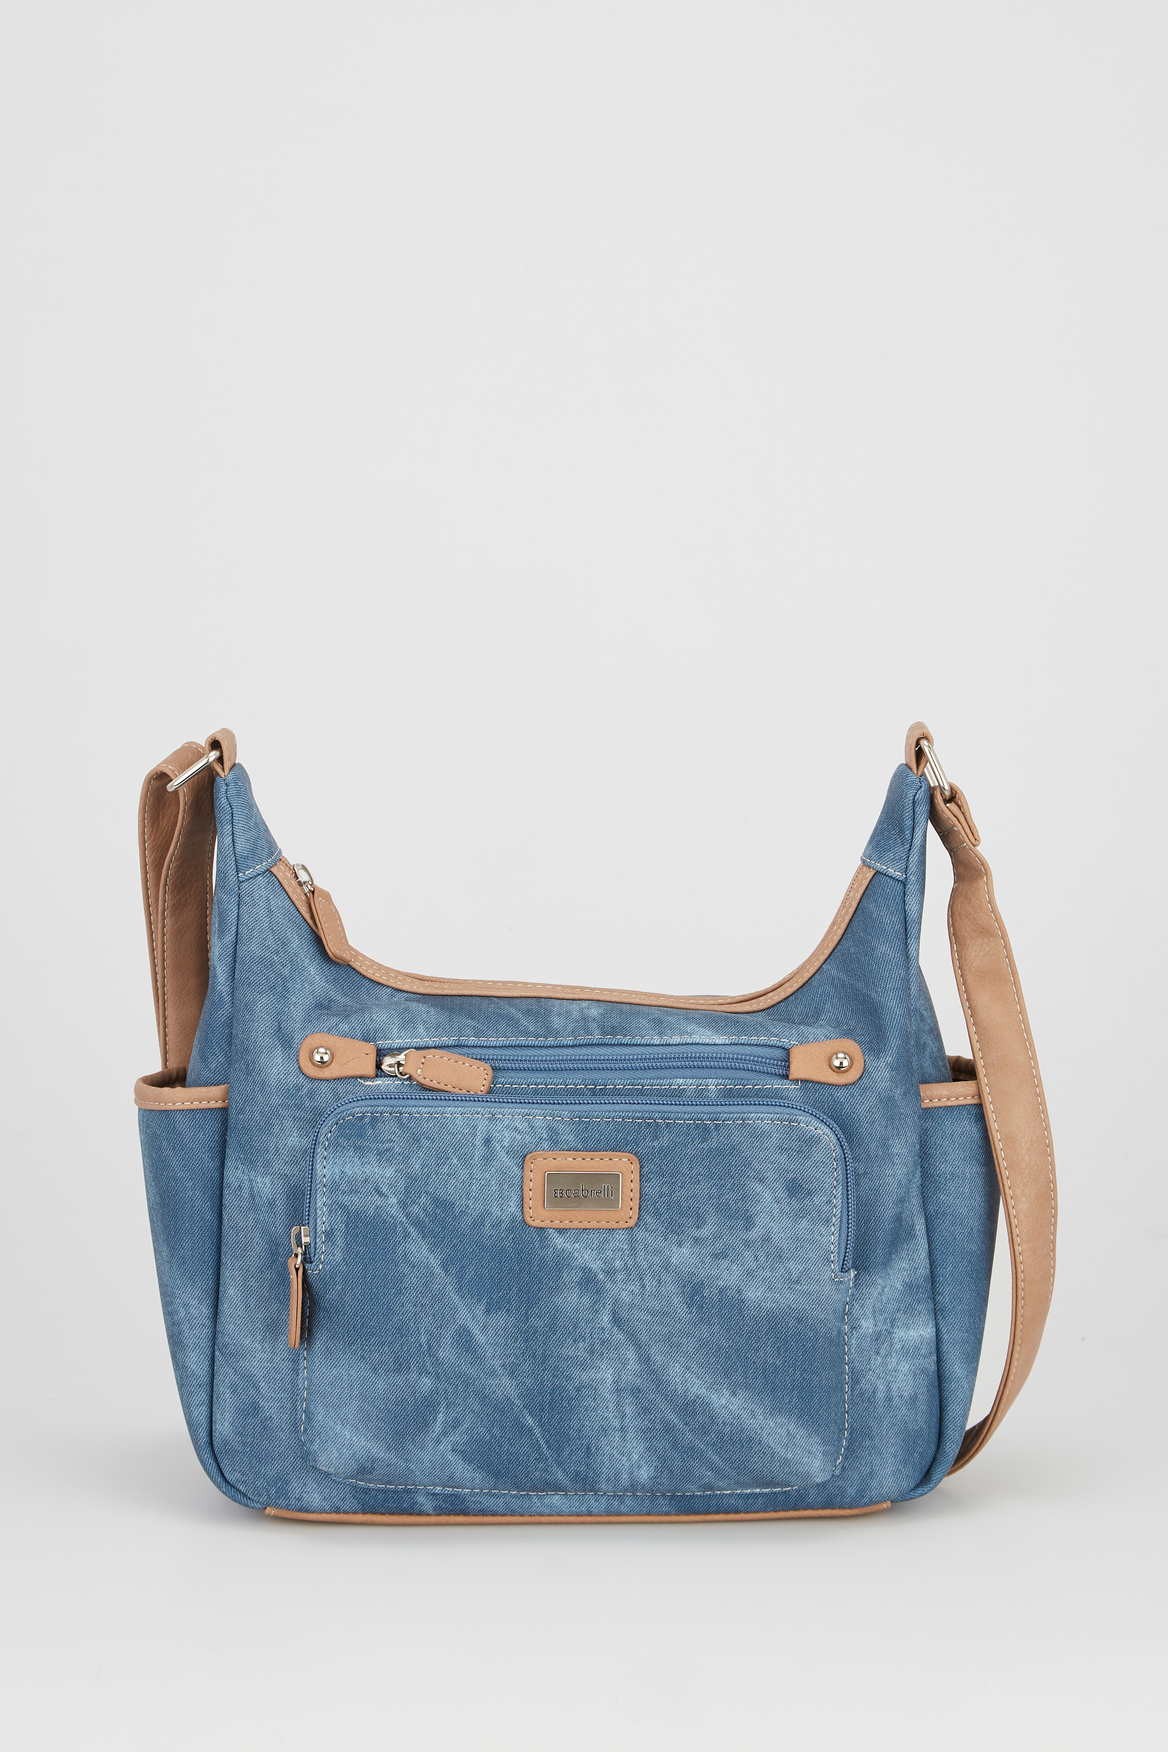 Everyone appreciates a custom designed handbag